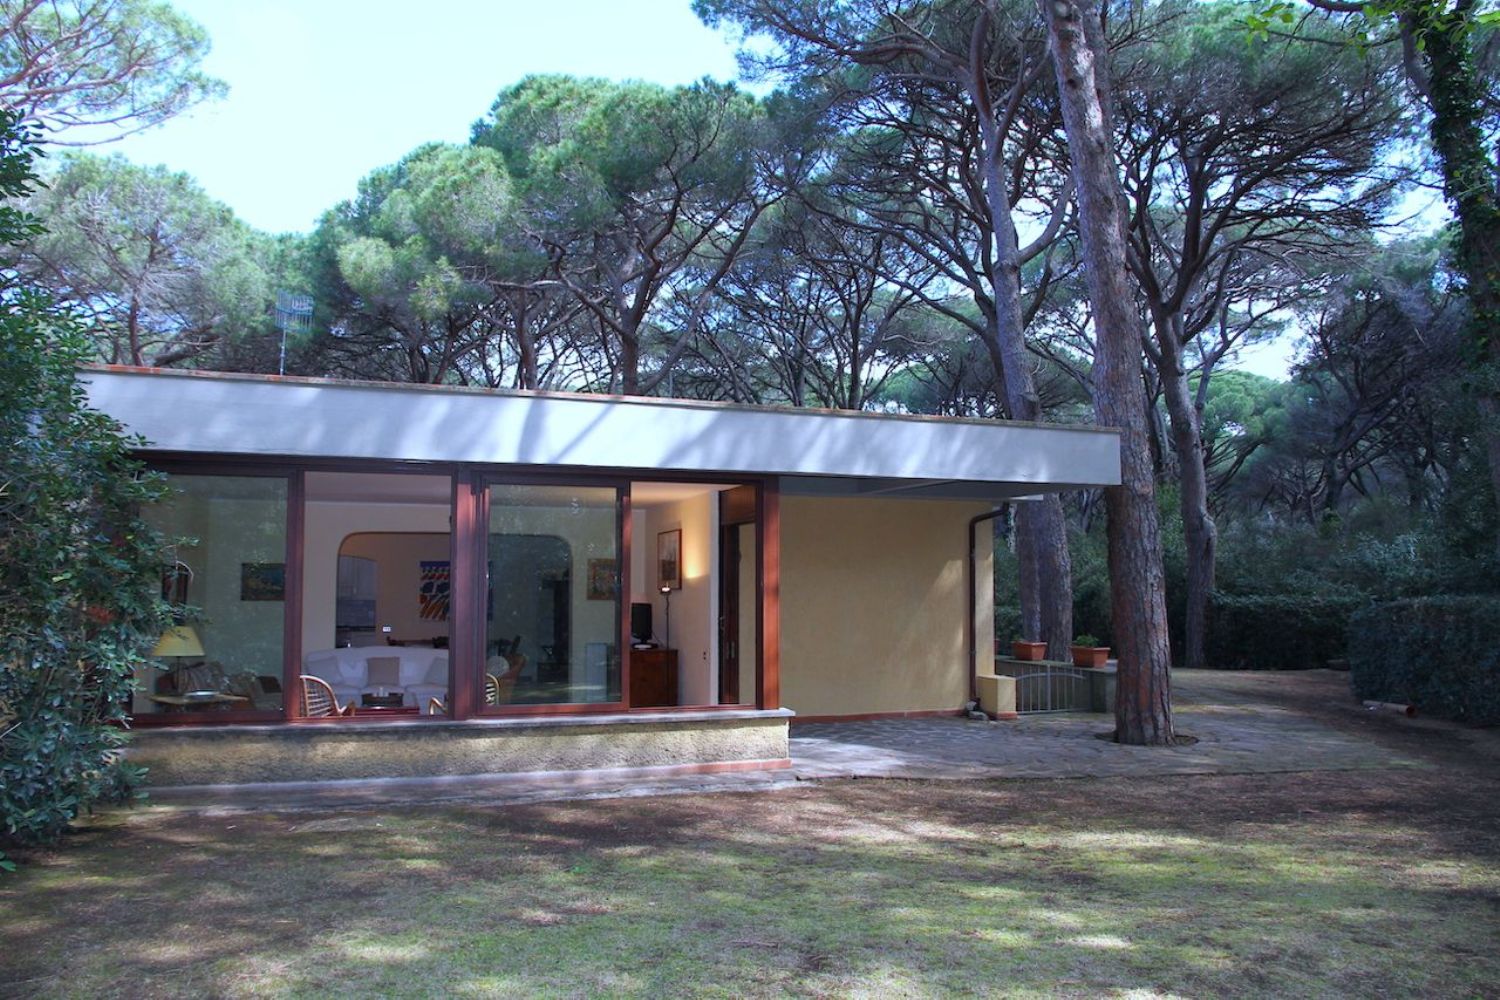 Villa Bifamiliare in affitto a Castiglione della Pescaia, 5 locali, prezzo € 15.000 | CambioCasa.it